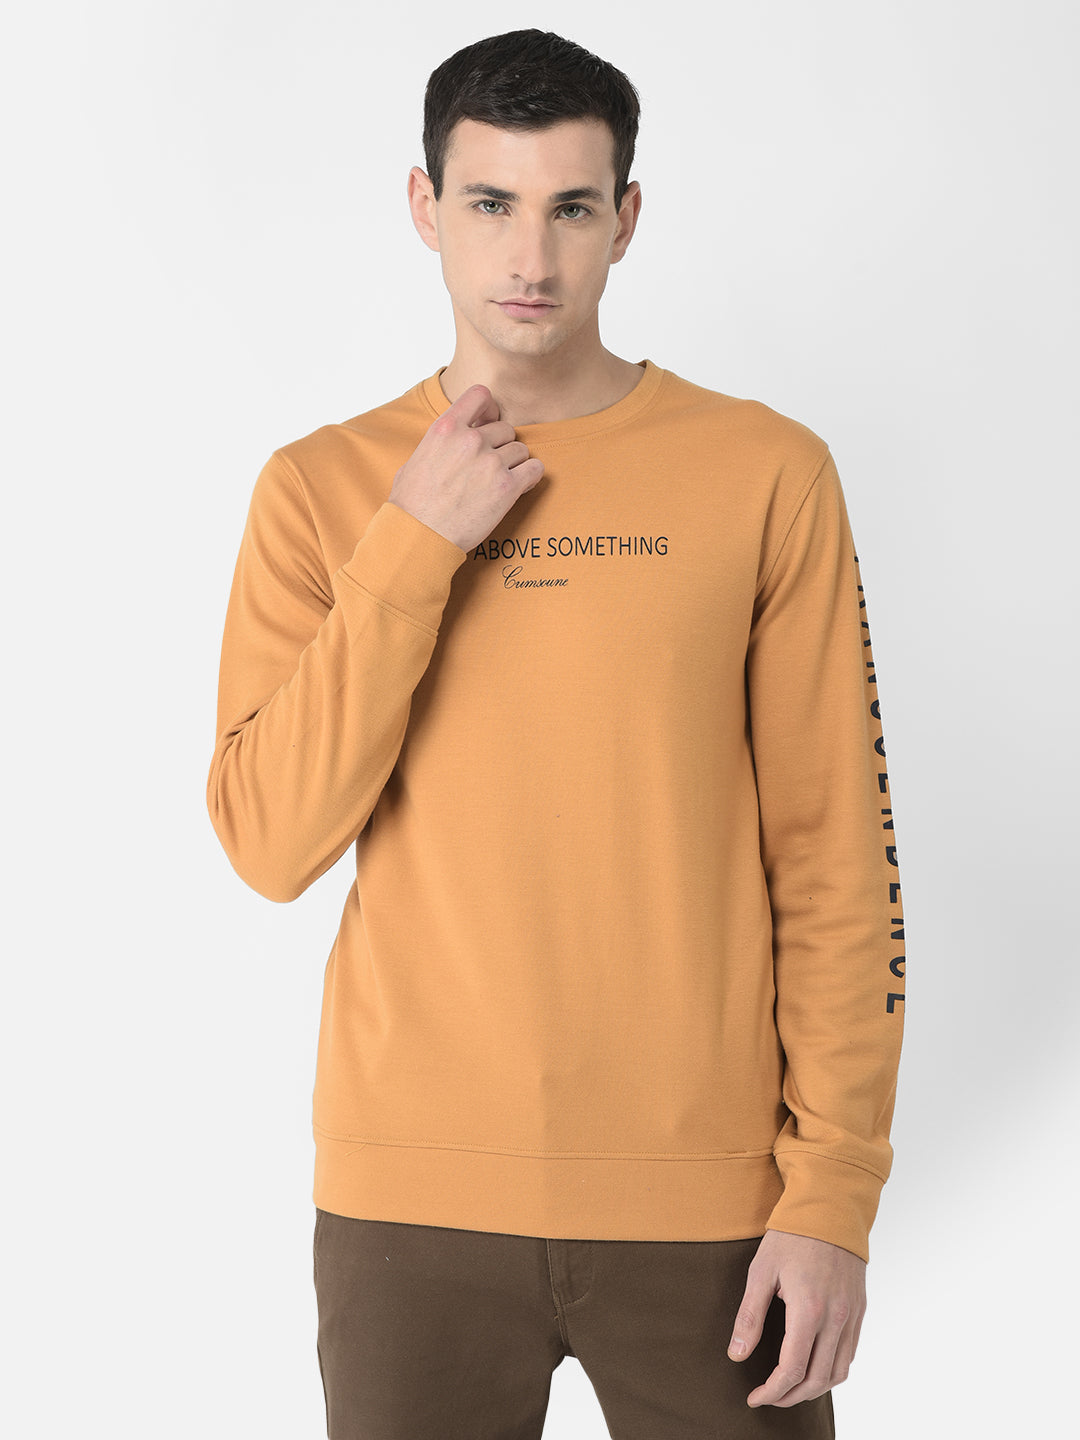  Mustard Transcendence Sweatshirt